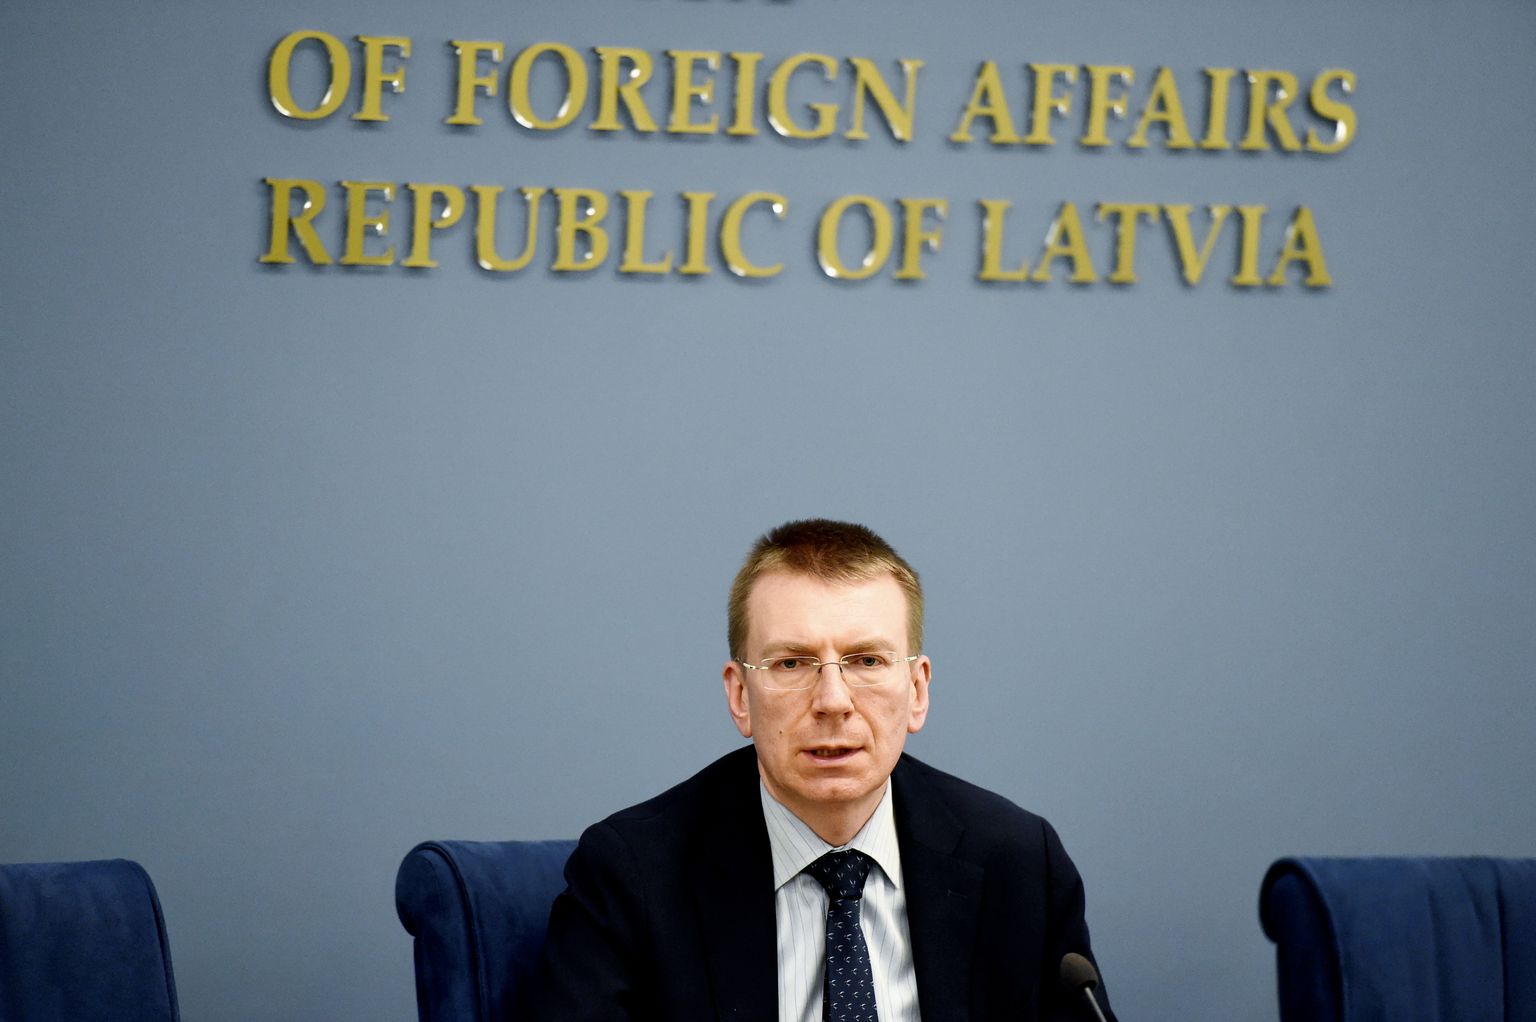 Ārlietu ministrs Edgars Rinkēvičs piedalās preses brīfingā, kurā informē par Latvijas soļiem saistībā ar Solsberijā īstenoto ķīmisko ieroču lietošanas gadījumu.